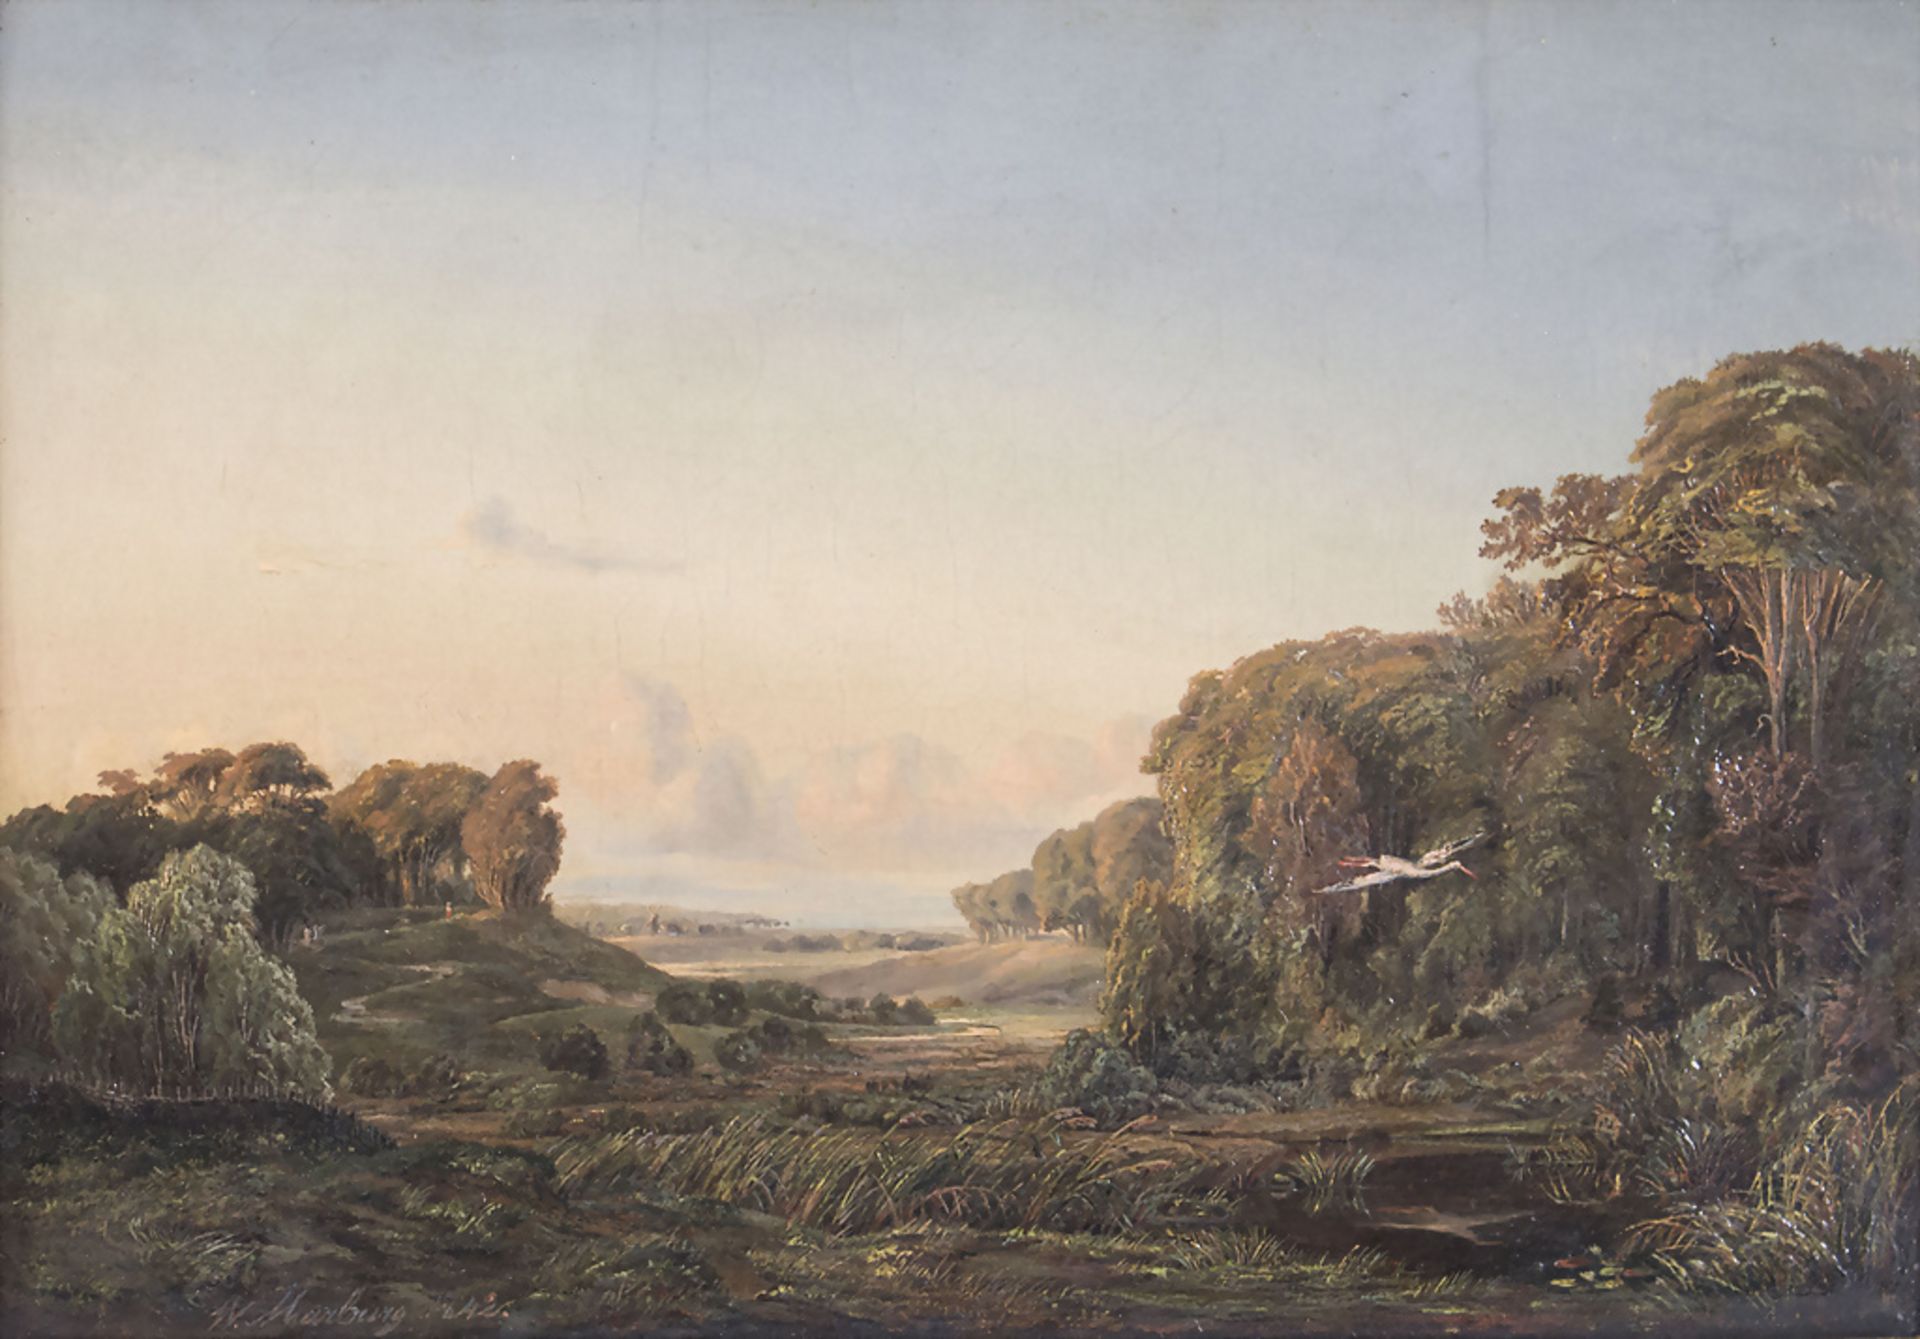 W. MARBURG, Landschaft mit Storch / A landscape with stork, 1842